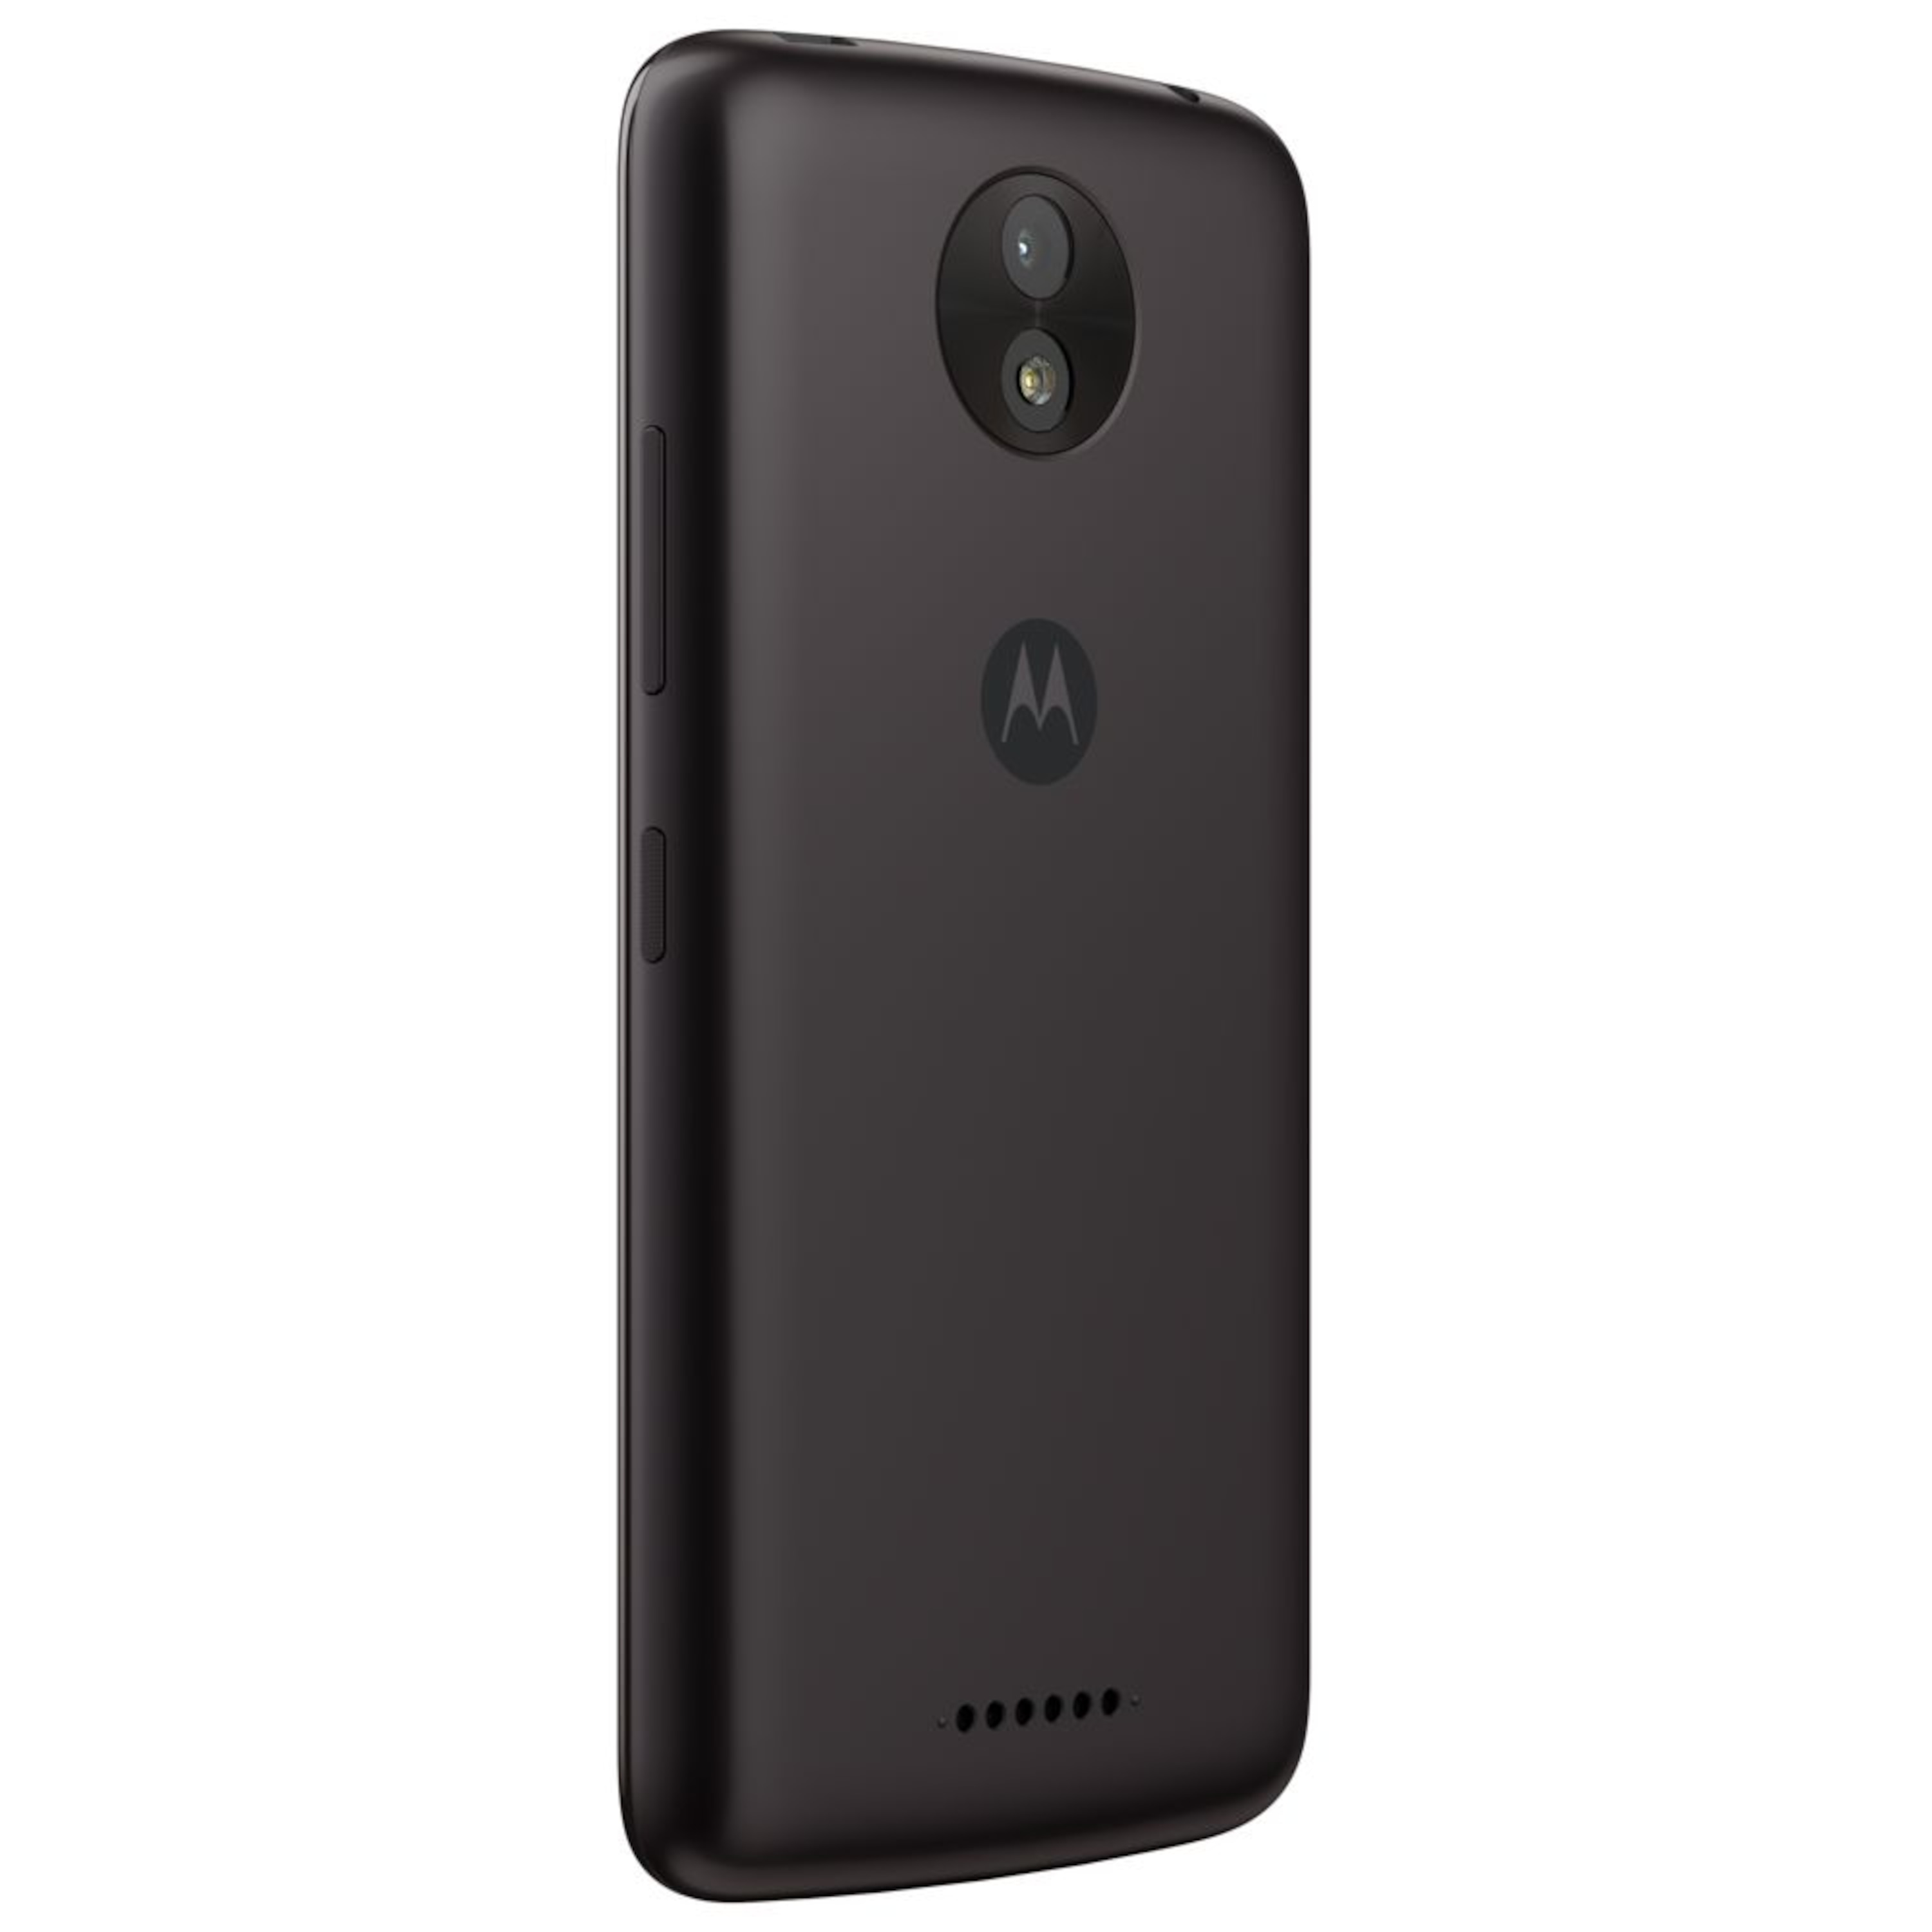 MOTOROLA Moto C Plus Smartphone, 12,7 cm (5") HD Display, Android™ 7.0, 16 GB Speicher, Quad-Core-Prozessor, Dual-SIM, LTE